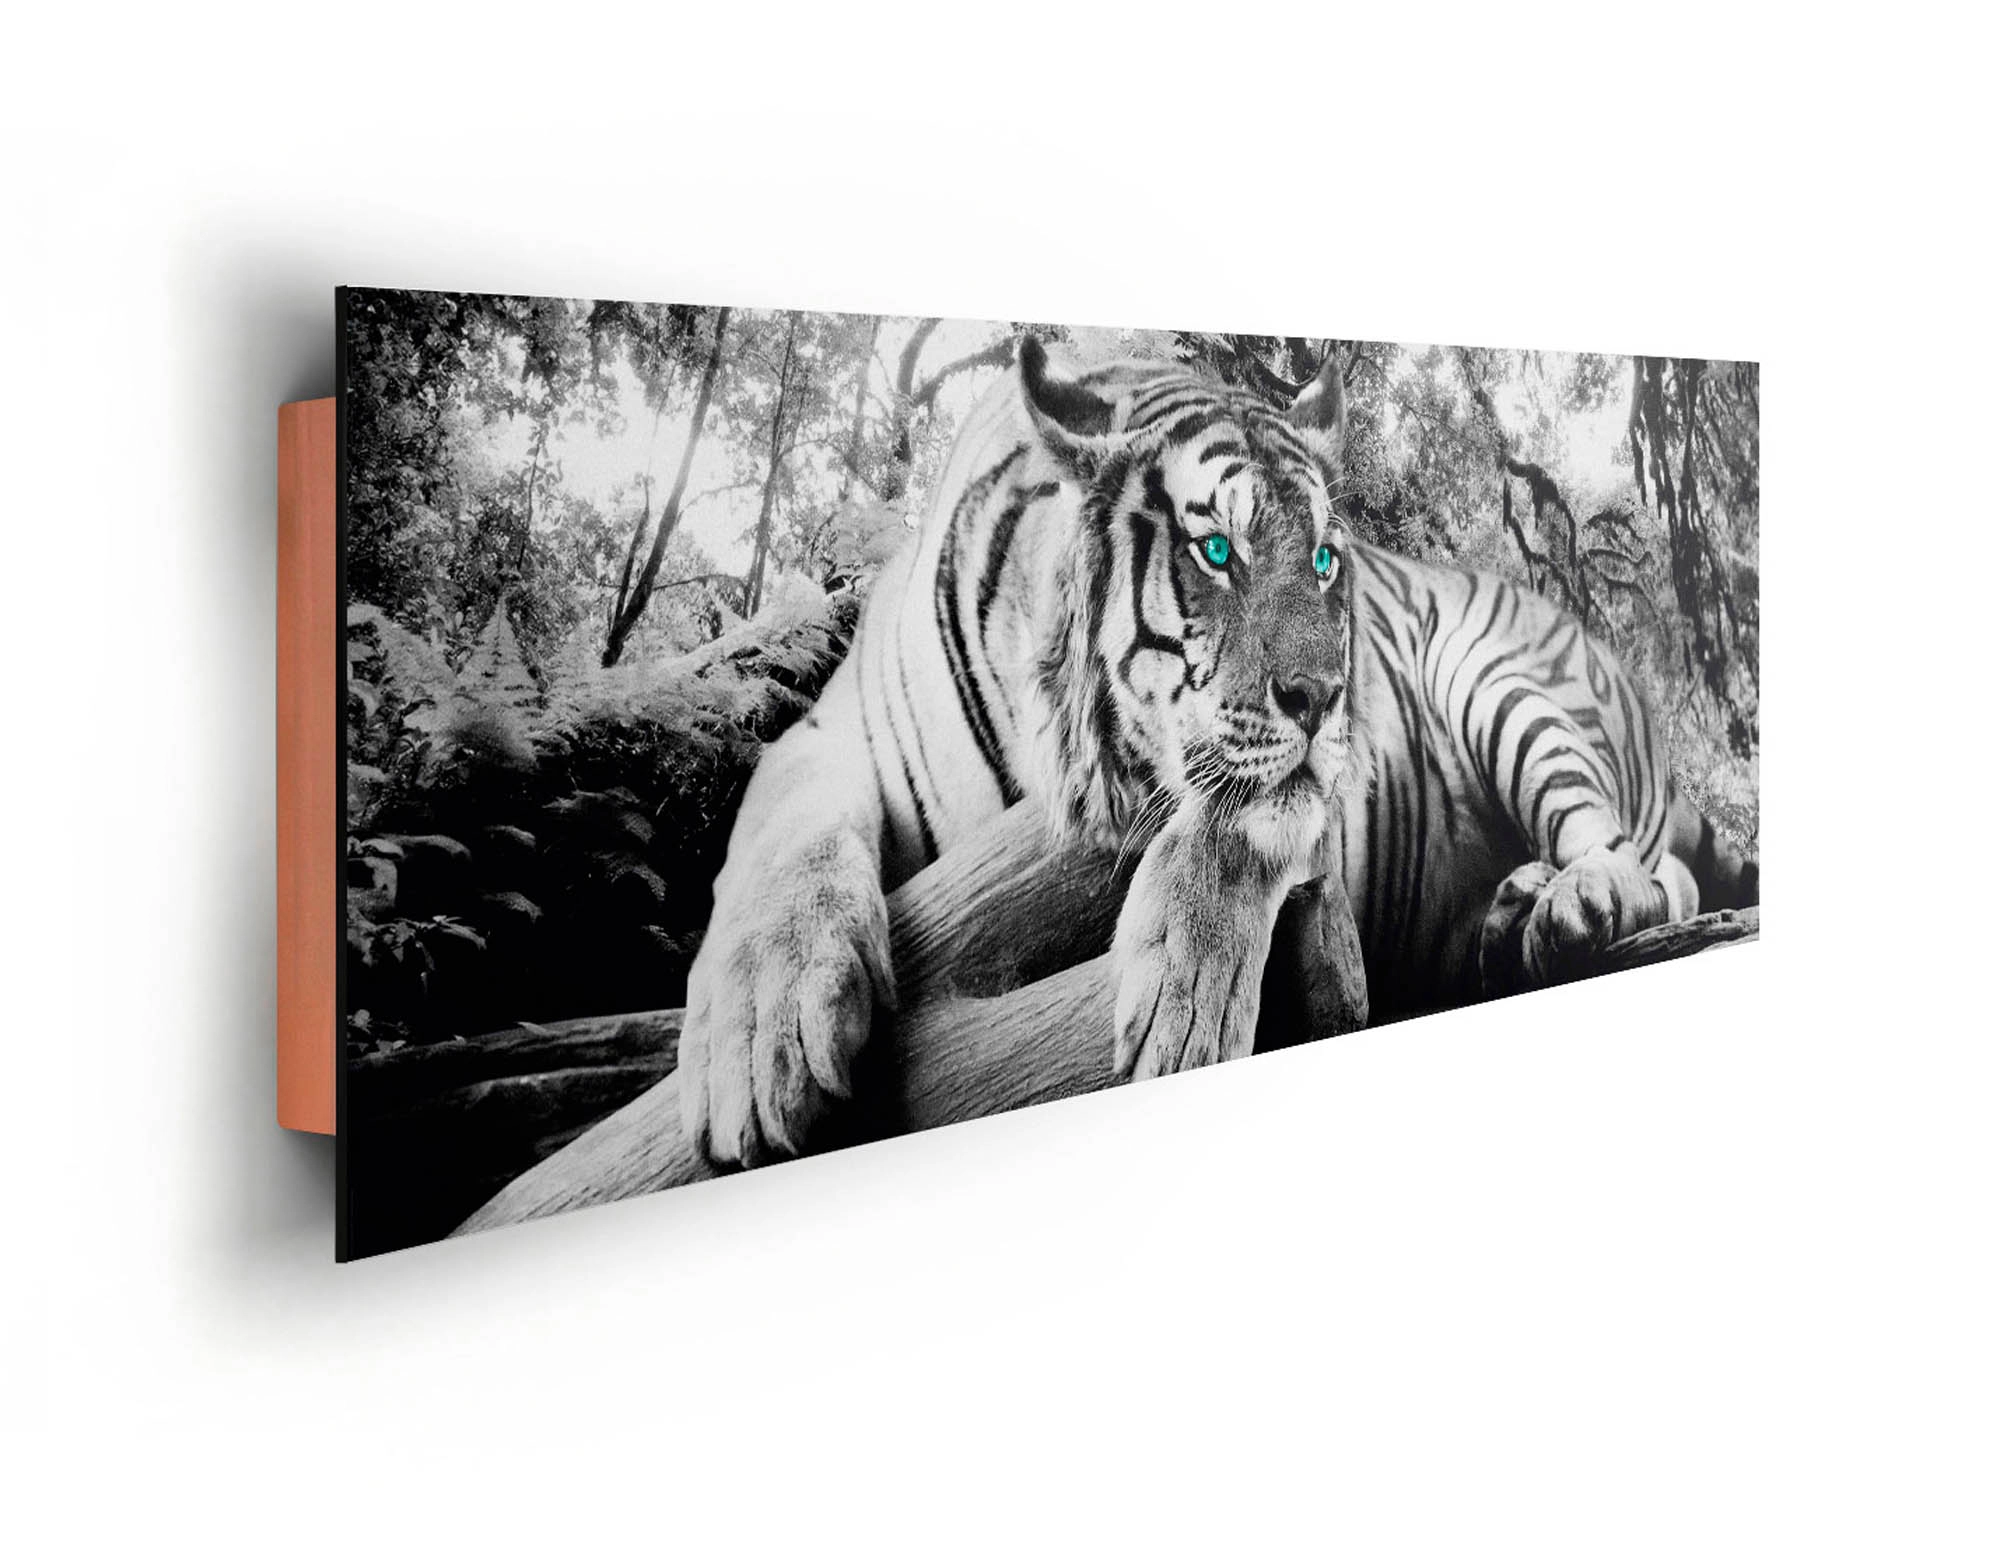 Wandbild Tiger an guckt kaufen bei cm OBI 52 dich 156 x cm